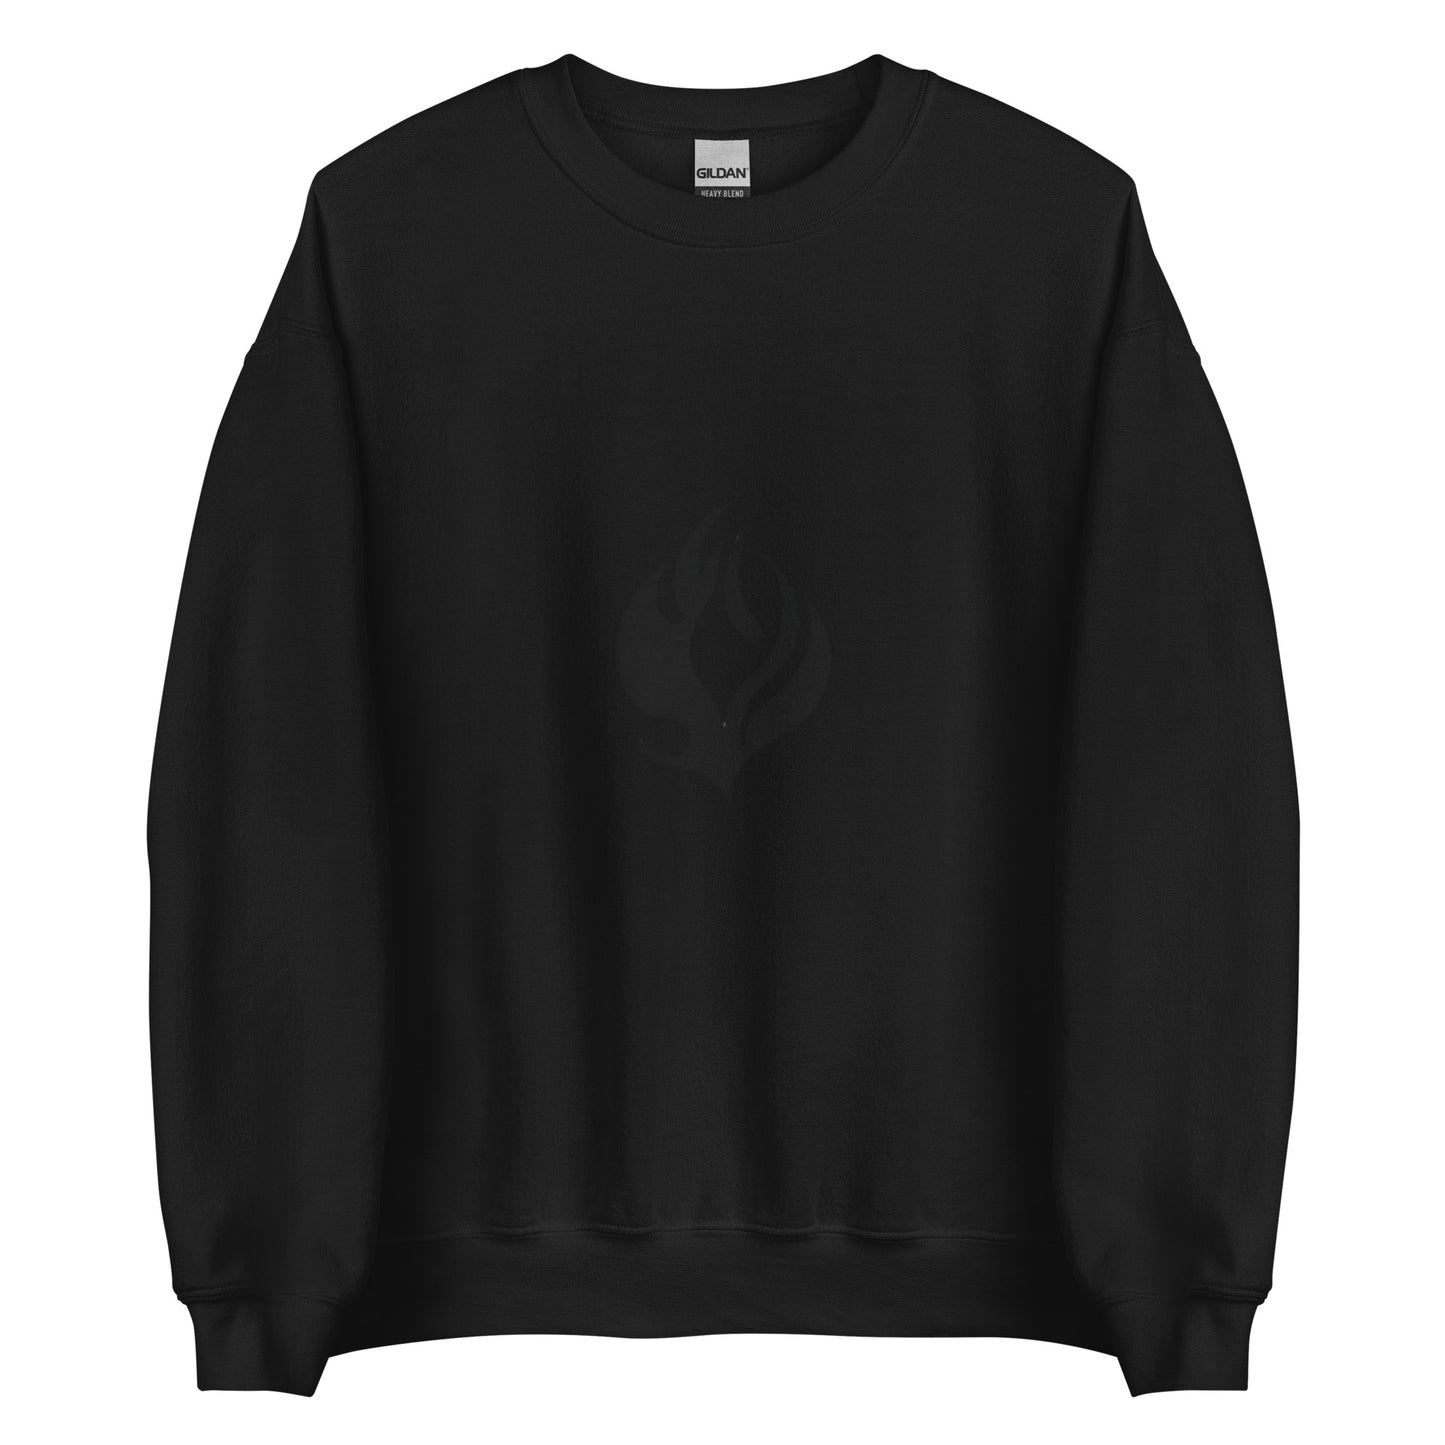 Flame - Sweatshirt